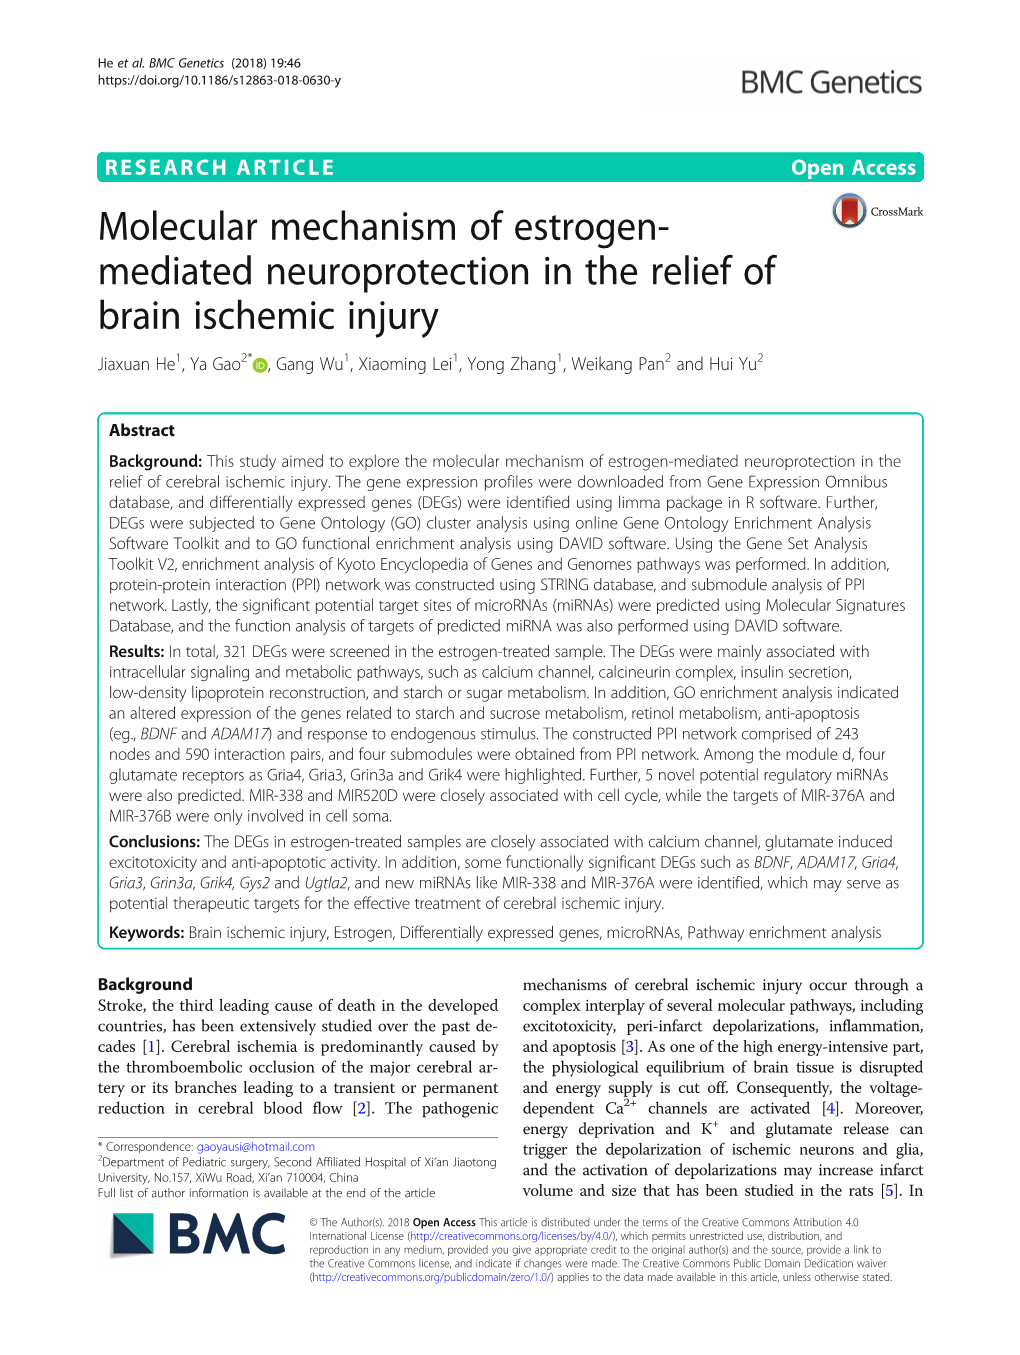 Mediated Neuroprotection in the Relief of Brain Ischemic Injury Jiaxuan He1, Ya Gao2* , Gang Wu1, Xiaoming Lei1, Yong Zhang1, Weikang Pan2 and Hui Yu2